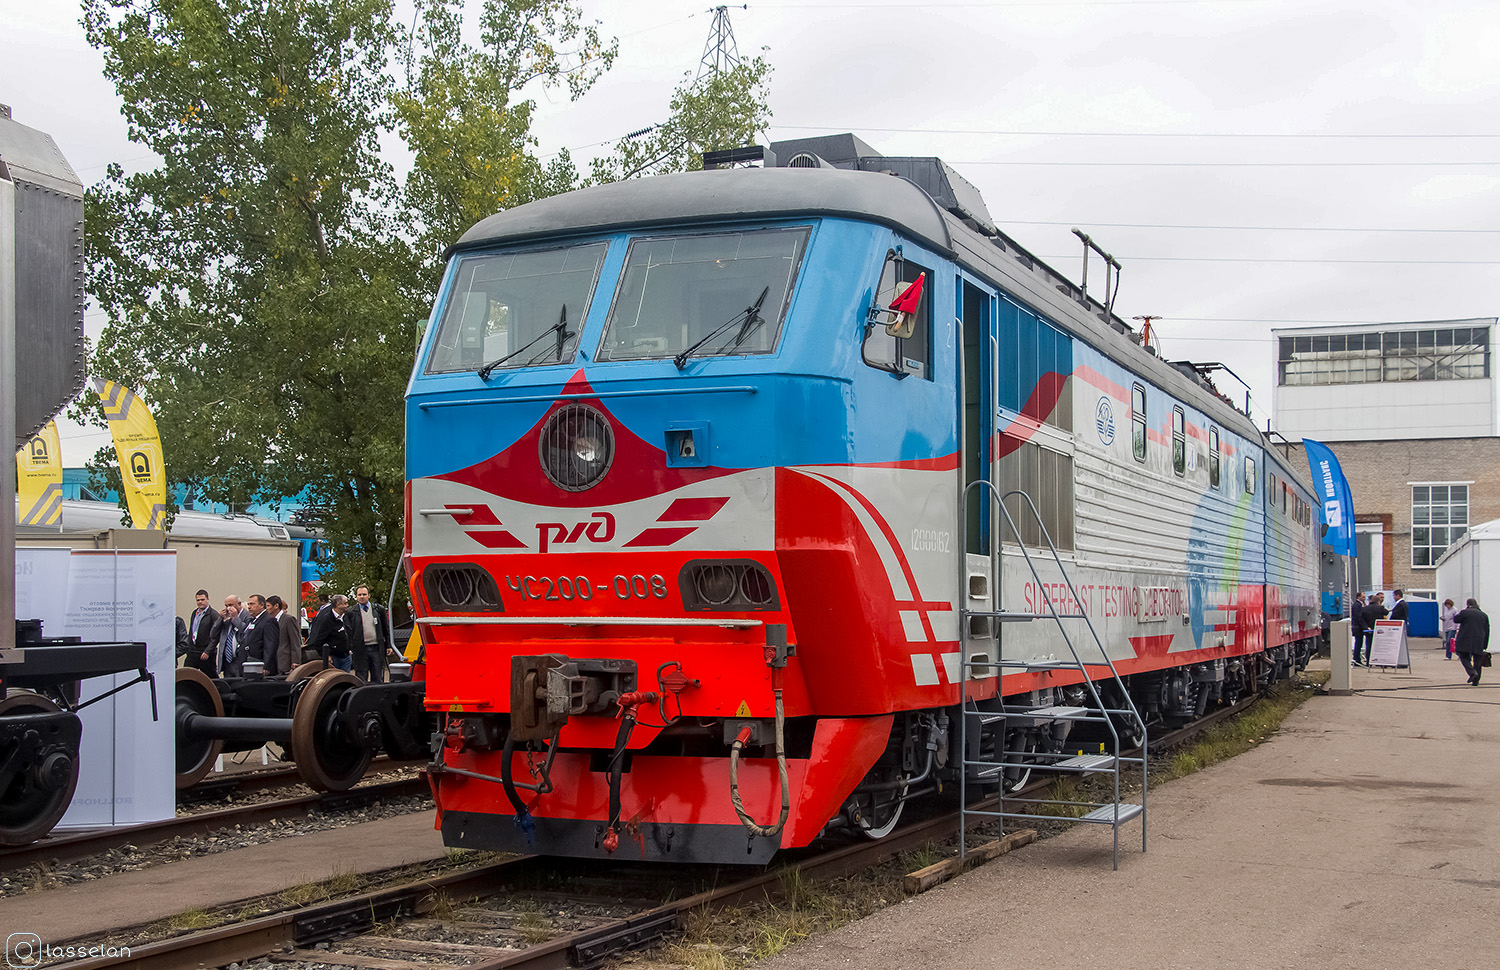 ЧС200-008; Московская железная дорога — IV Международный железнодорожный салон "ЭКСПО 1520" 2013